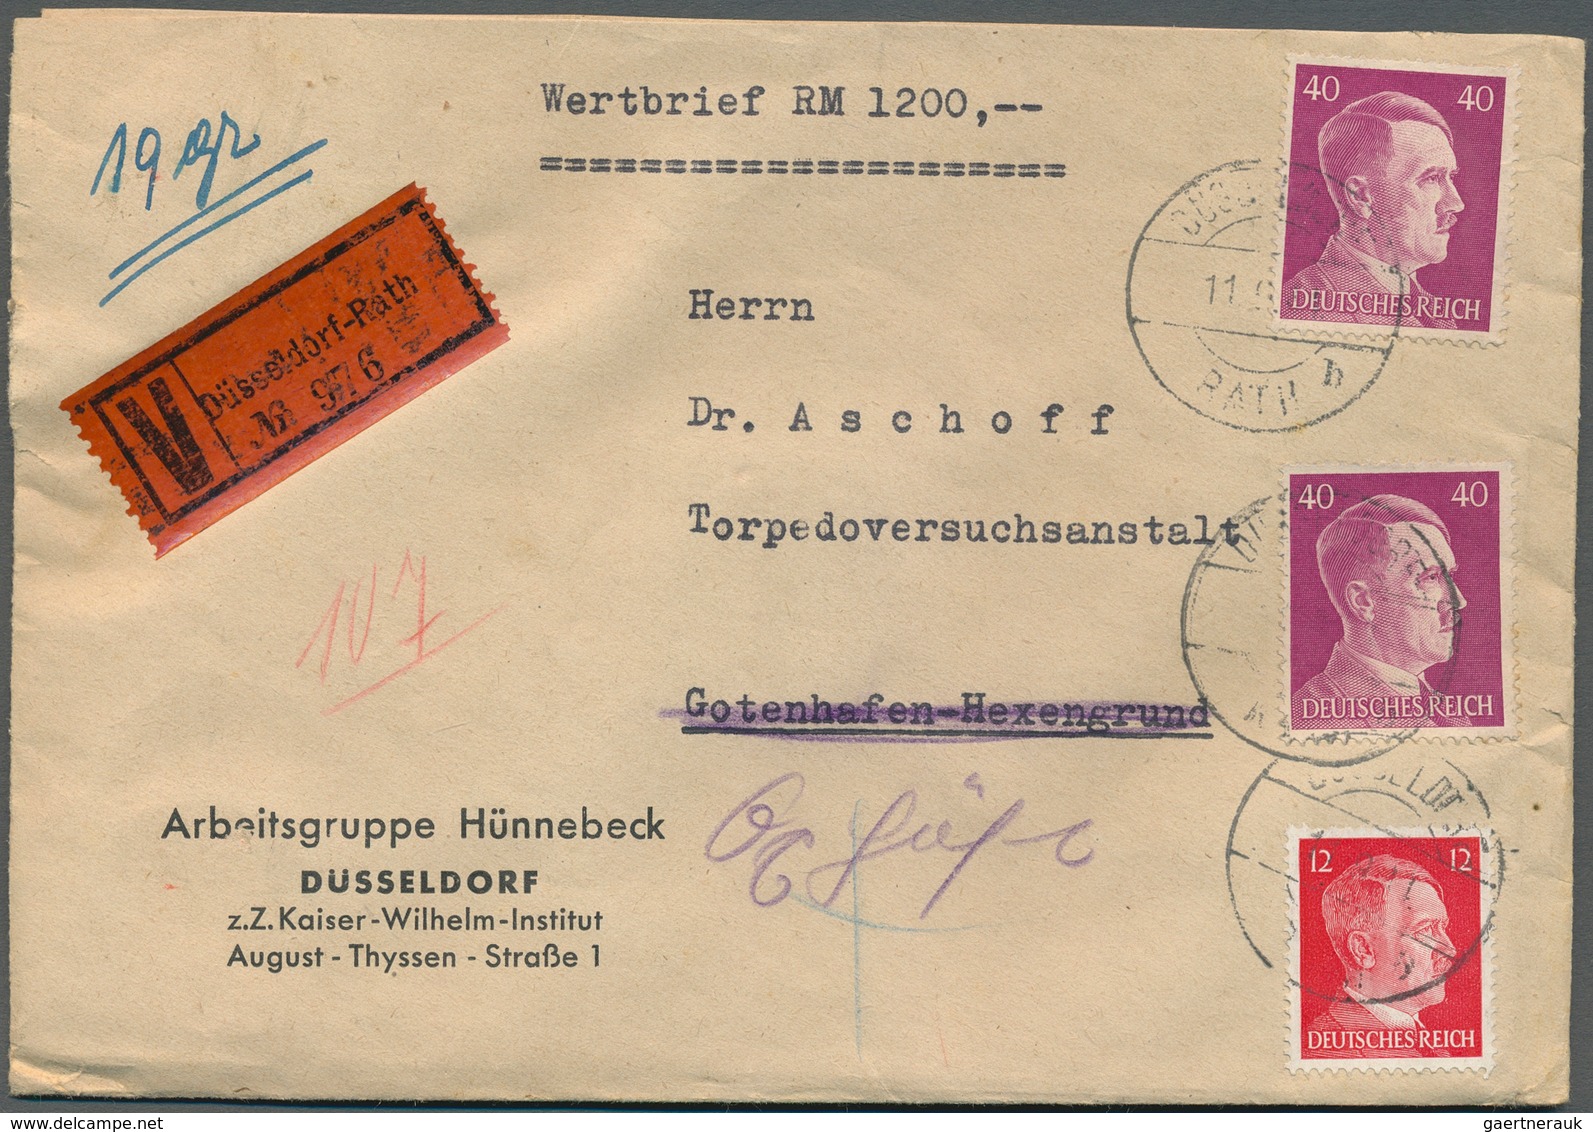 31625 Deutsches Reich - 3. Reich: 1933/1944, III.Reich und etwas Besetzungen, Partie von ca. 200 Briefen u